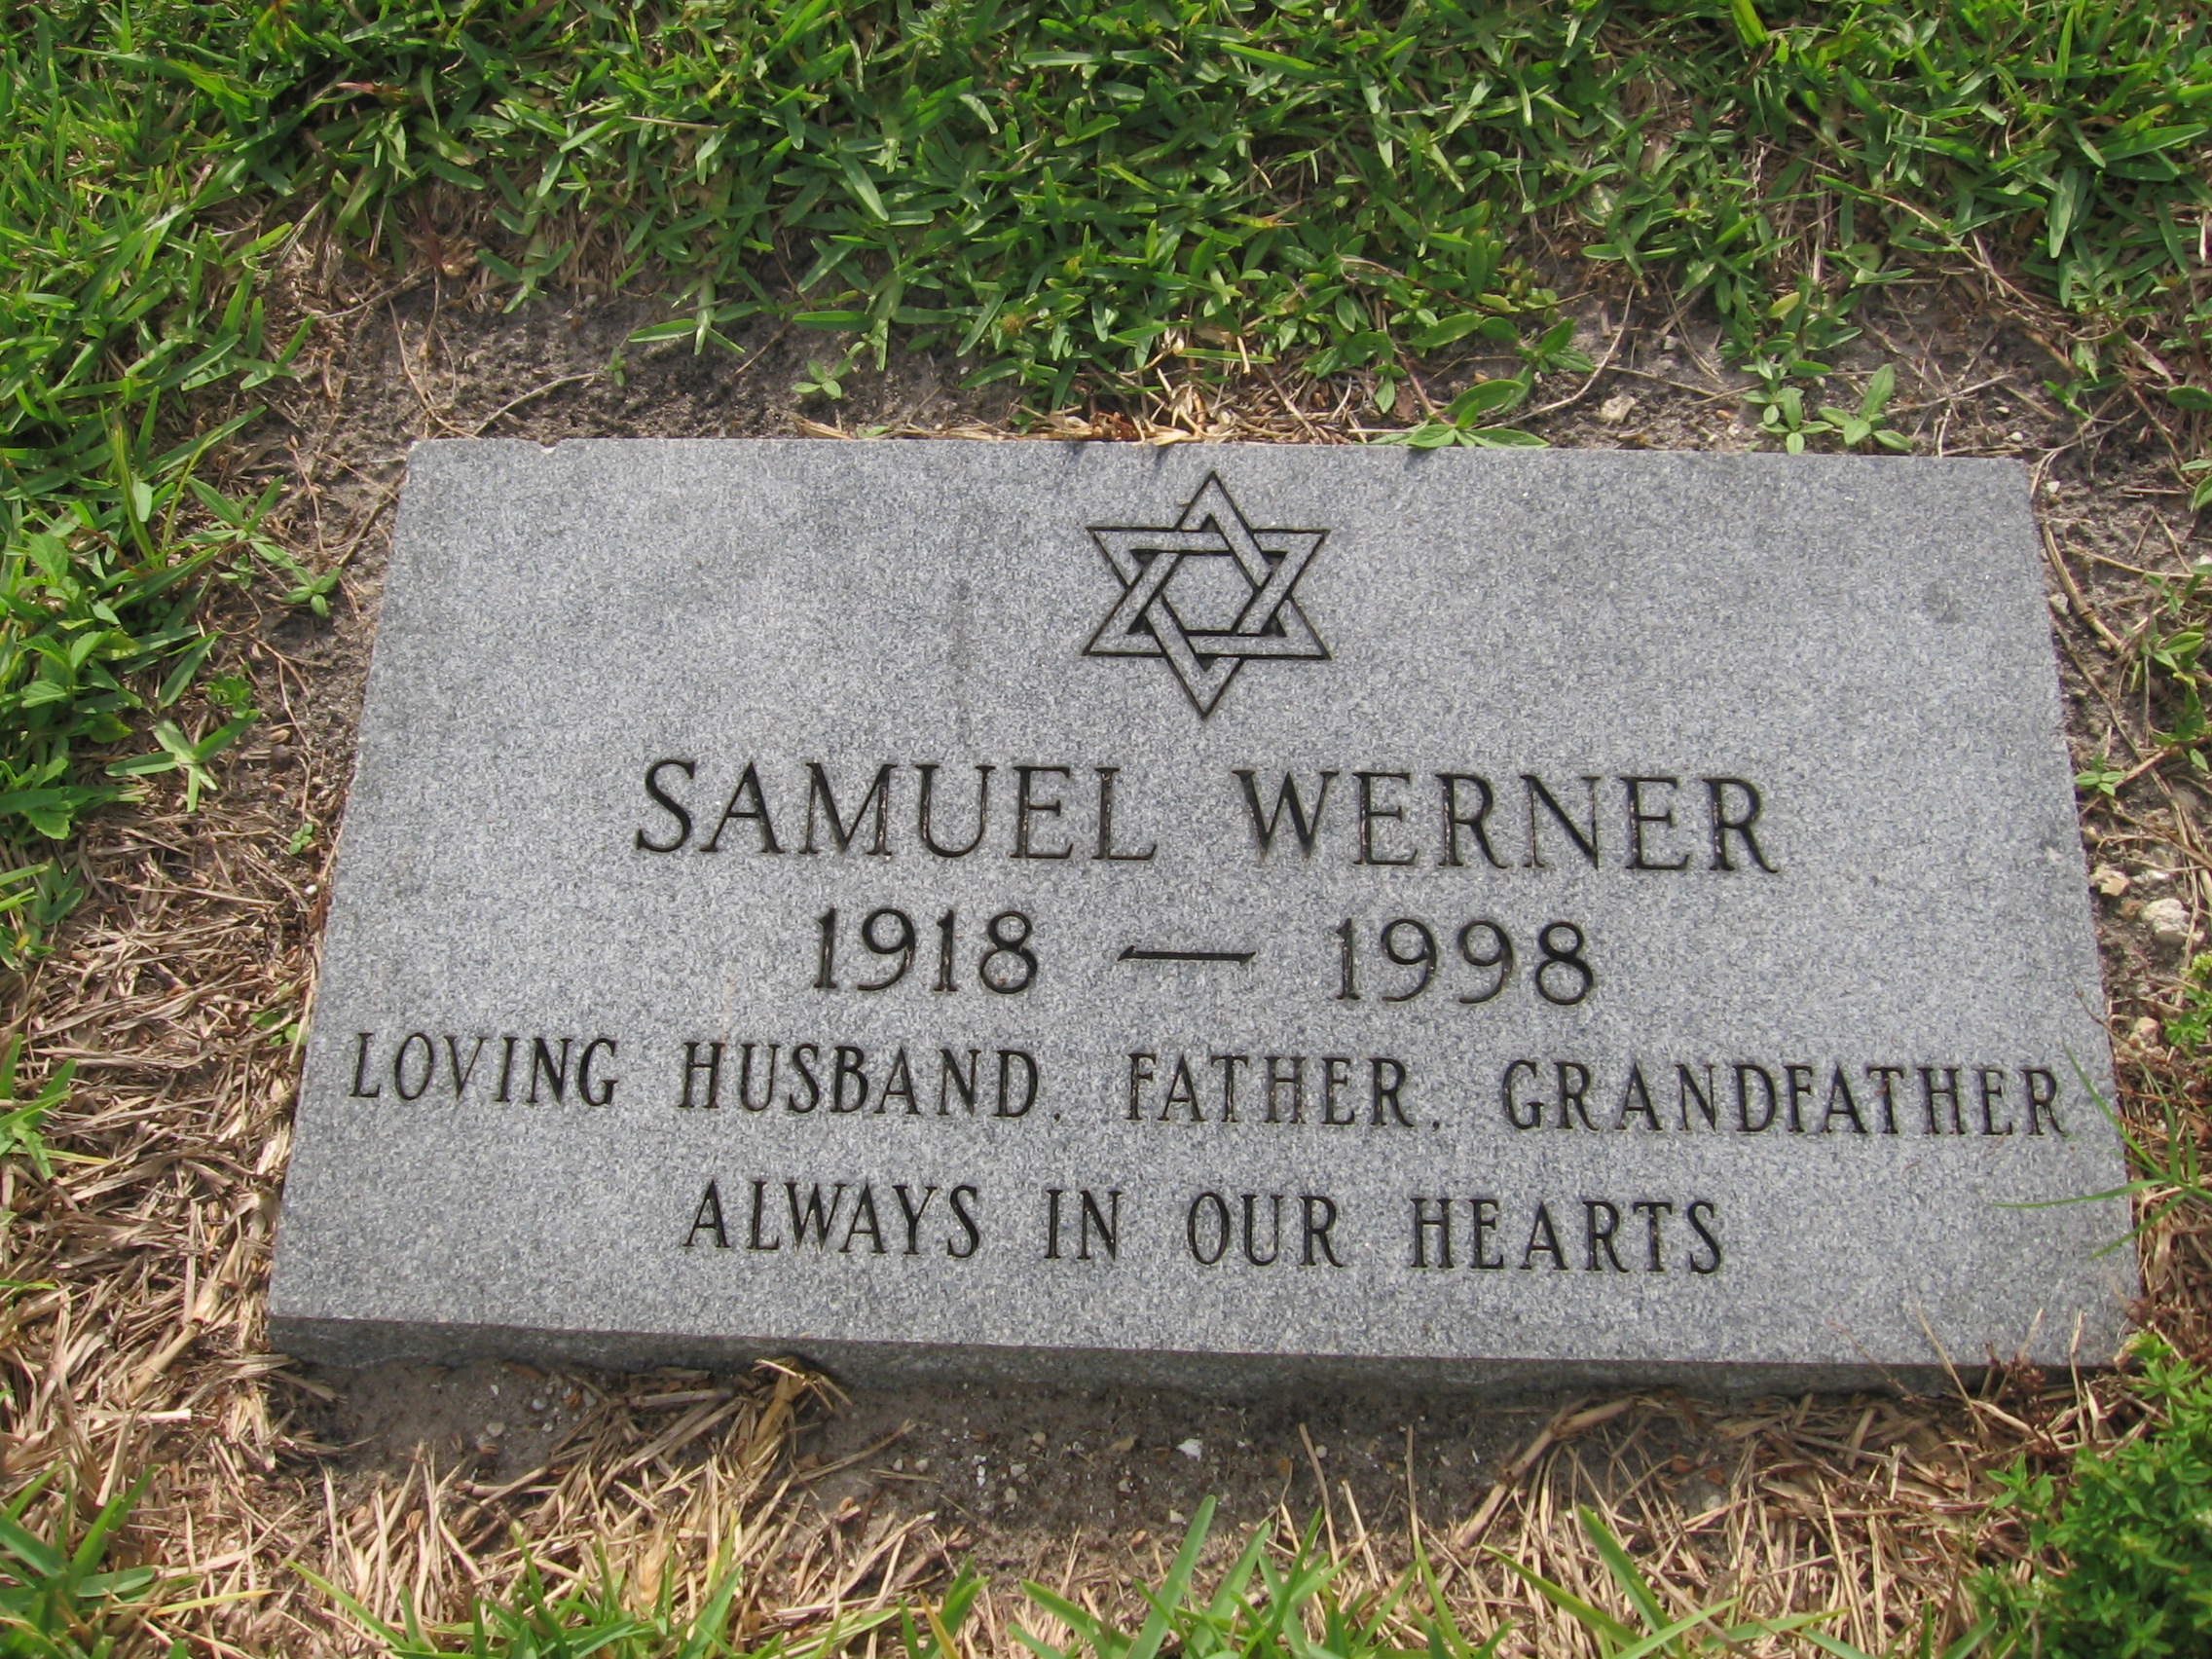 Samuel Werner